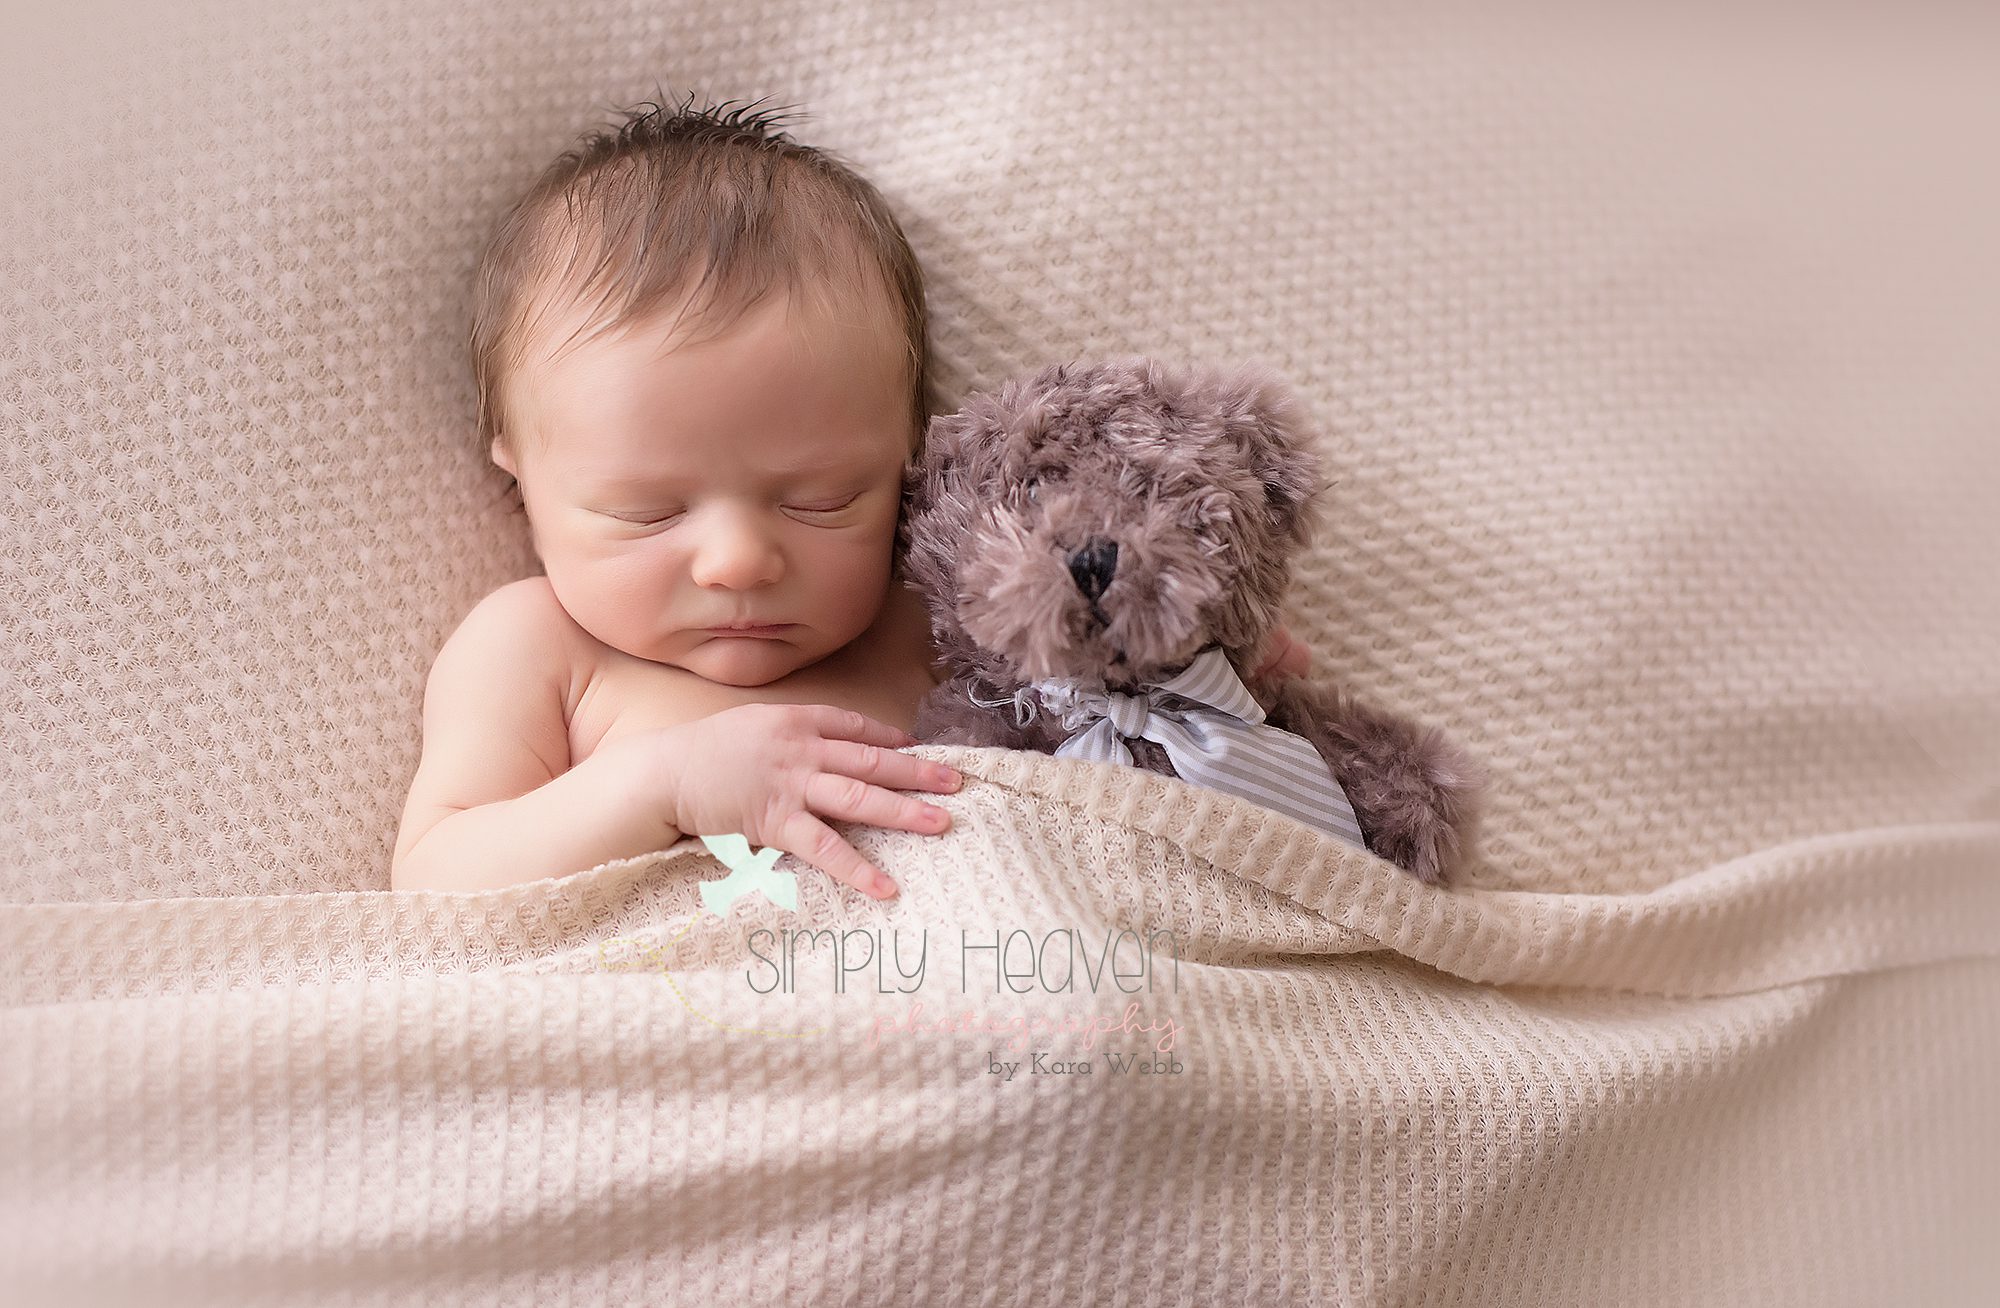 Newborn baby boy snuggling with his lovie teddy bear. 